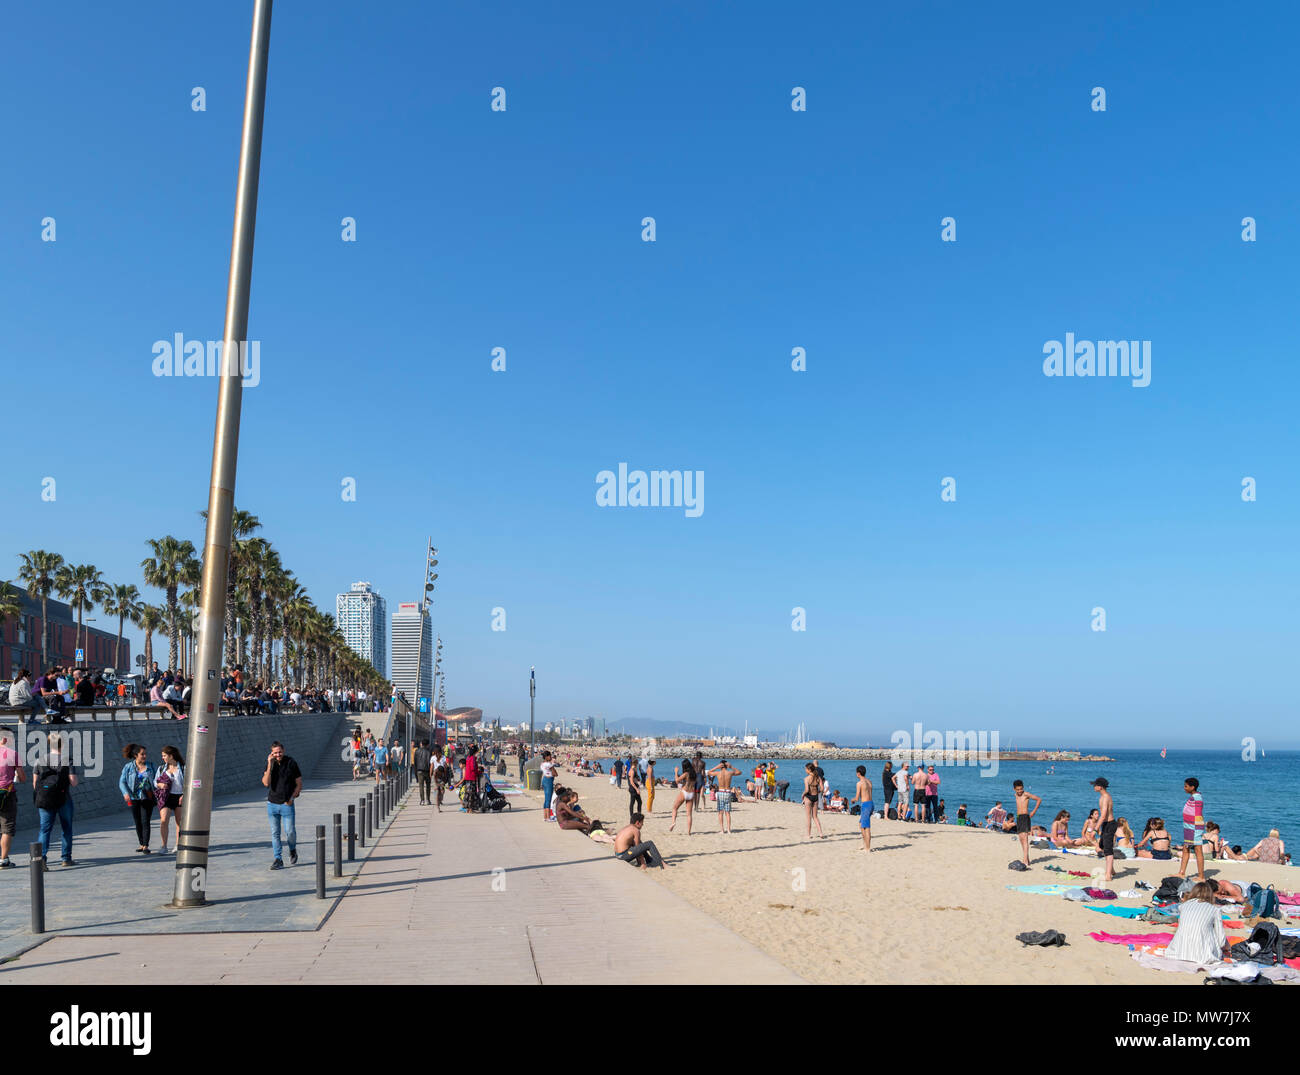 La plage de Barcelone. La plage et le Passeig Maritim dans Barcelona, Barcelone, Espagne Banque D'Images